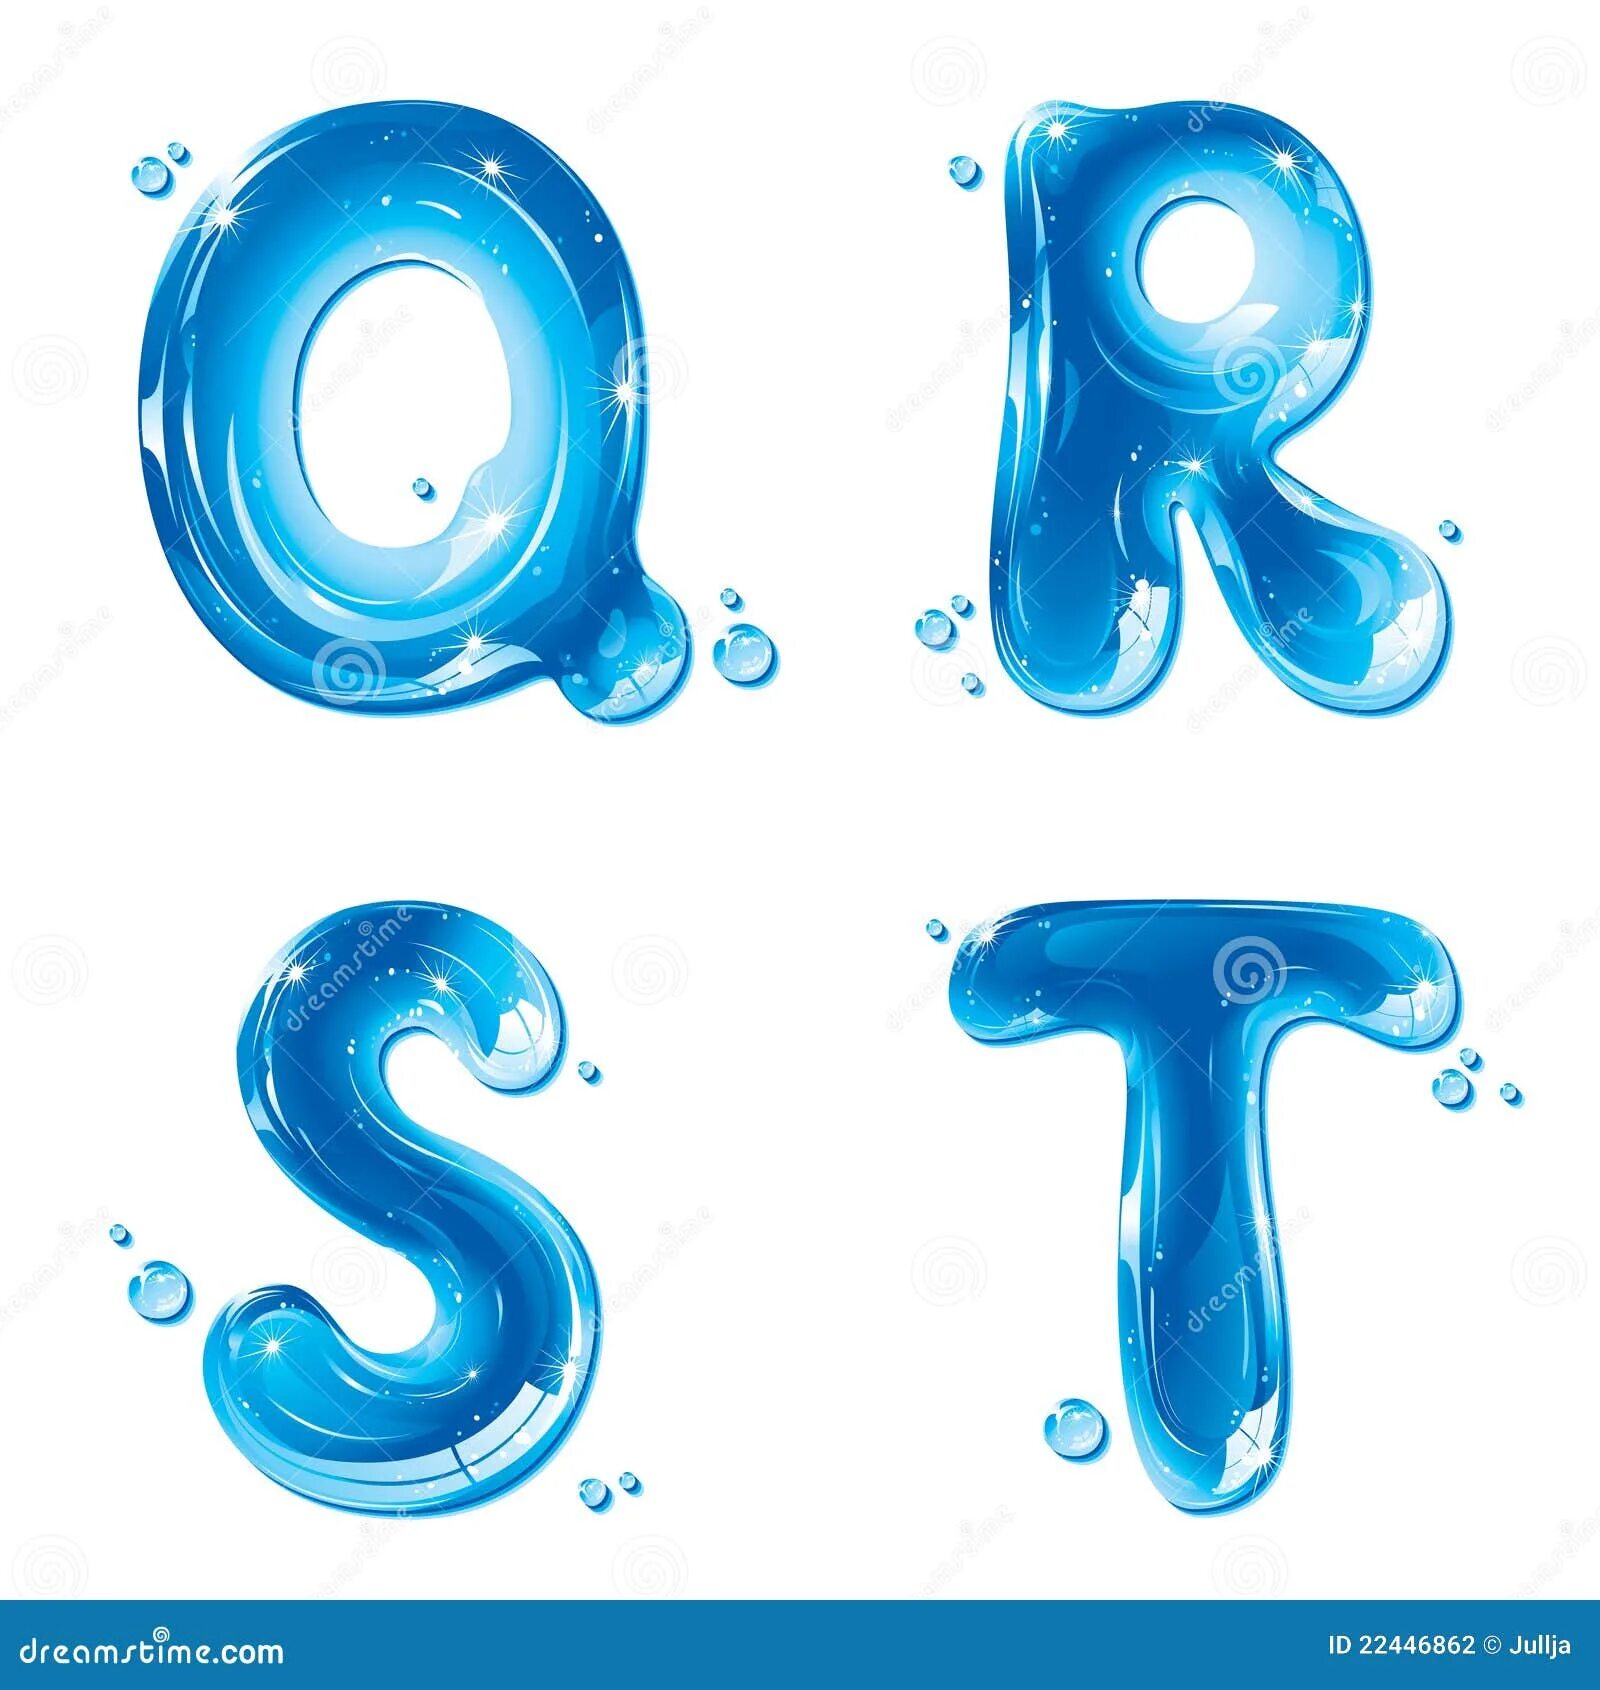 Водяные буквы. Буквы из воды. Буквы из воды в фотошопе. Красивые буквы с водой.